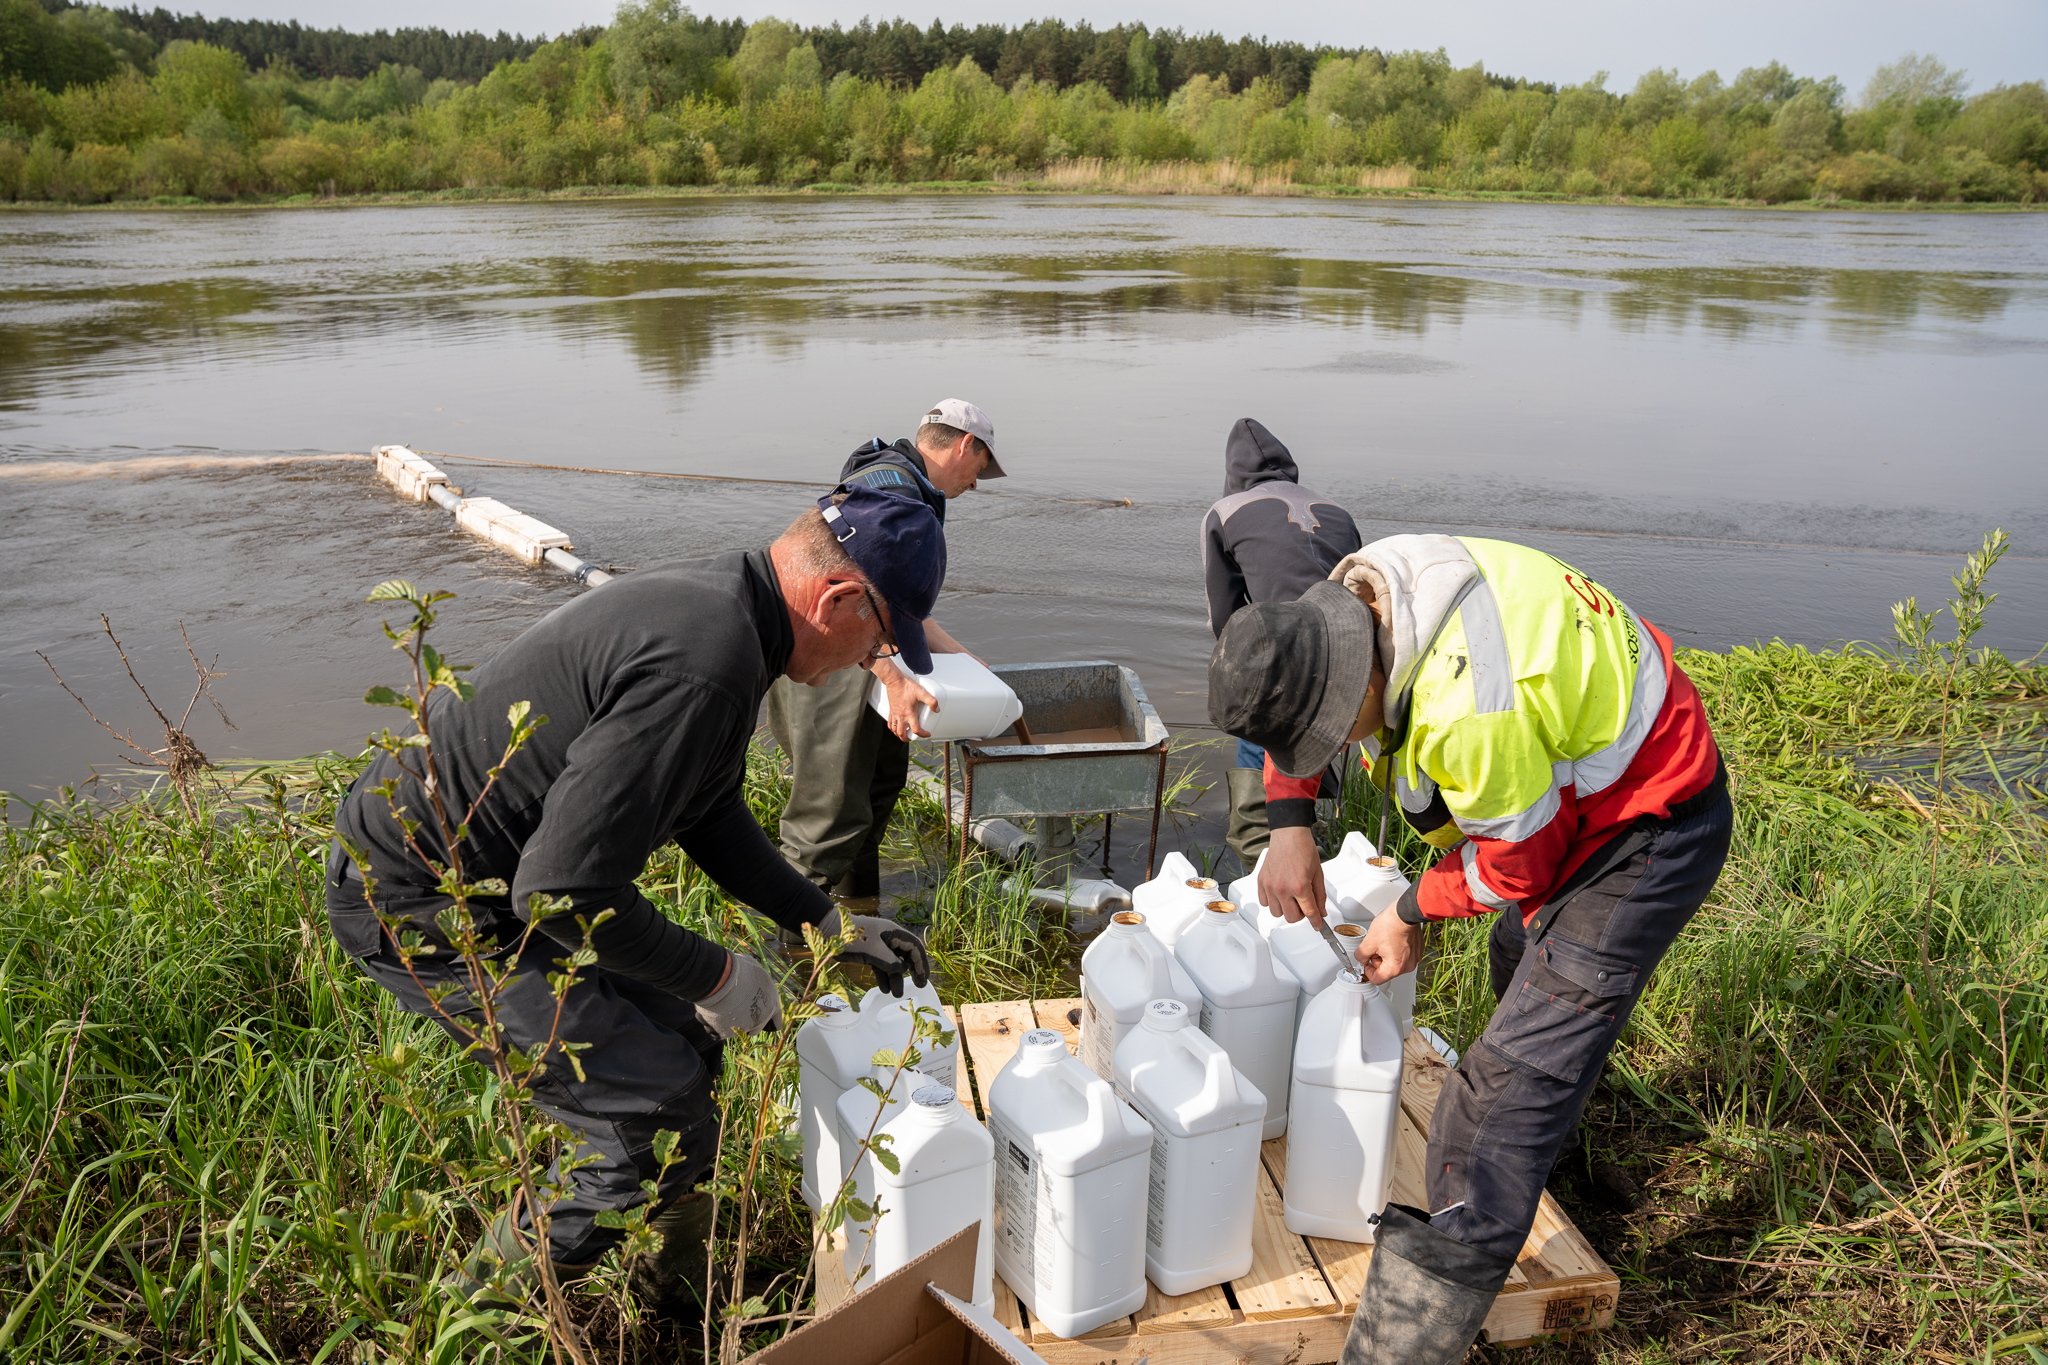 Į Nemuną išpiltas biologinis preparatas upinių mašalų lervoms naikinti | Druskininkų savivaldybės nuotr.